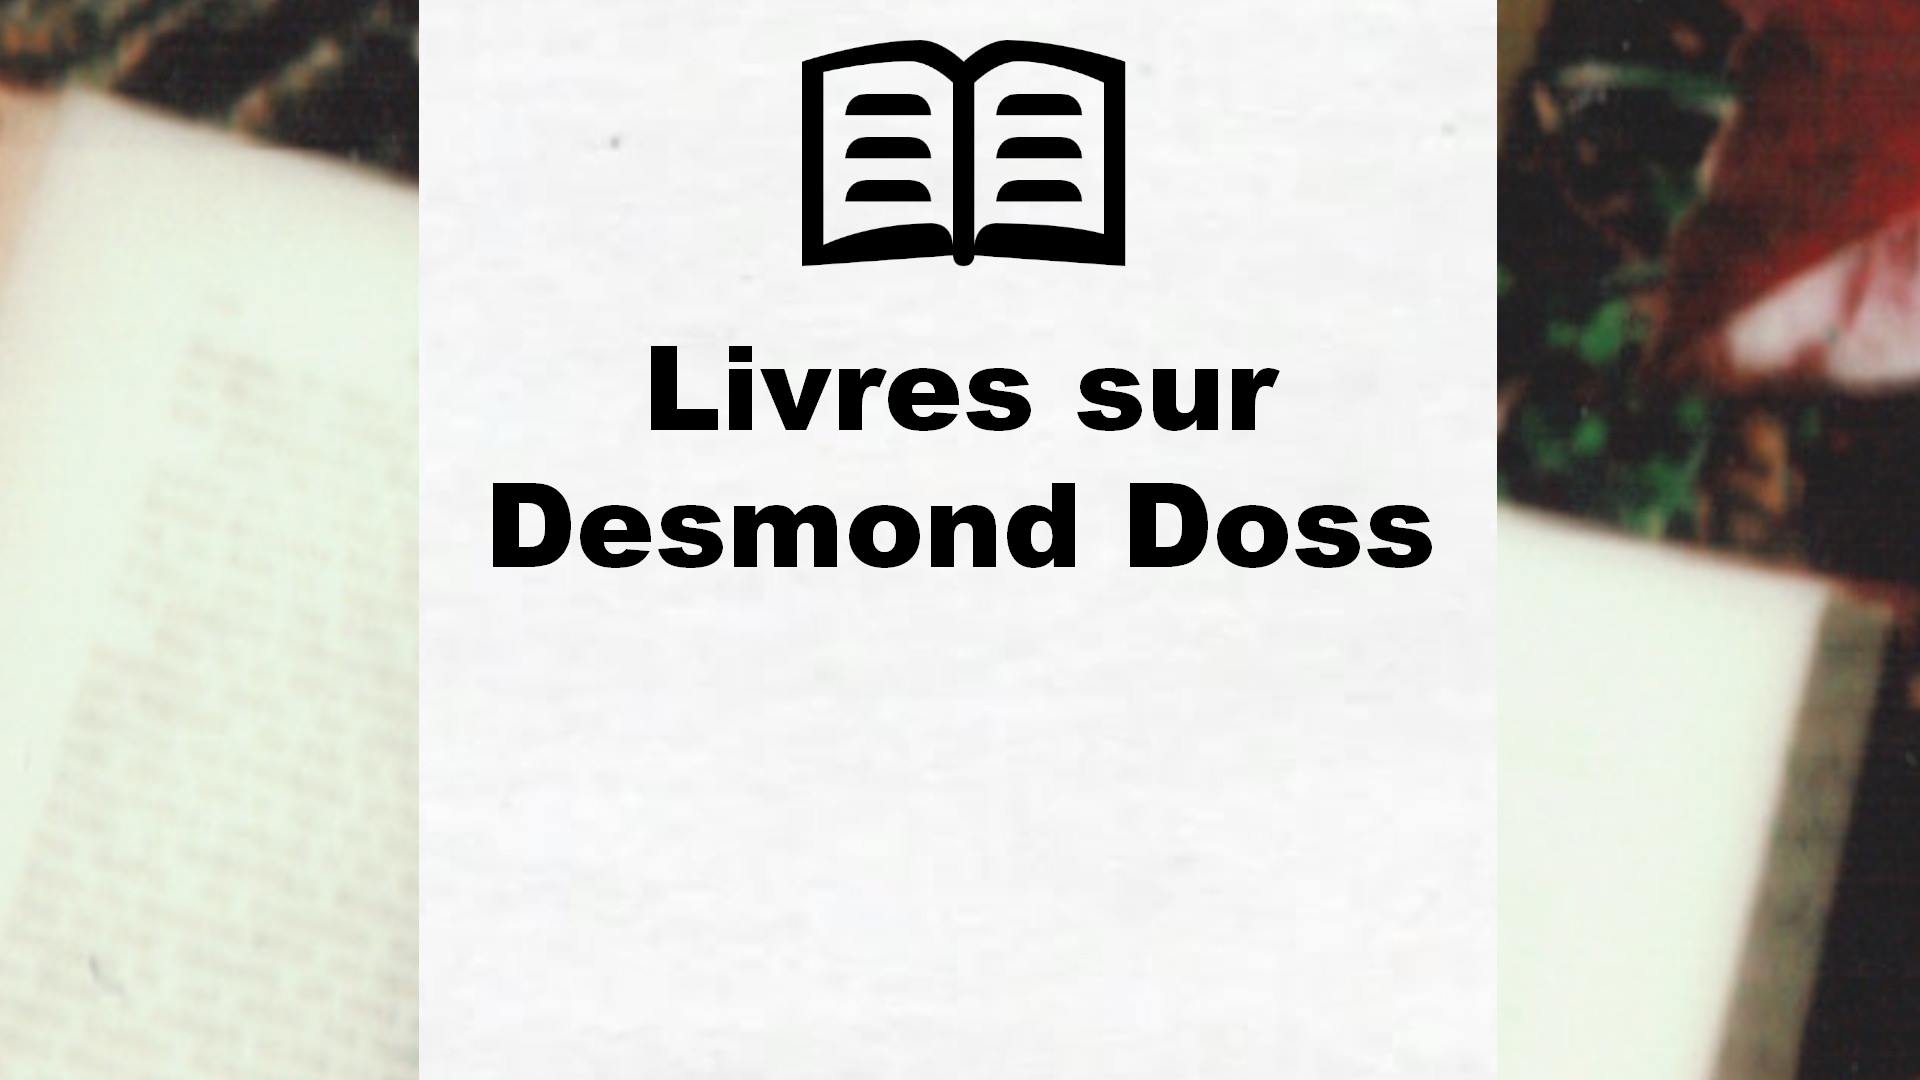 Livres sur Desmond Doss